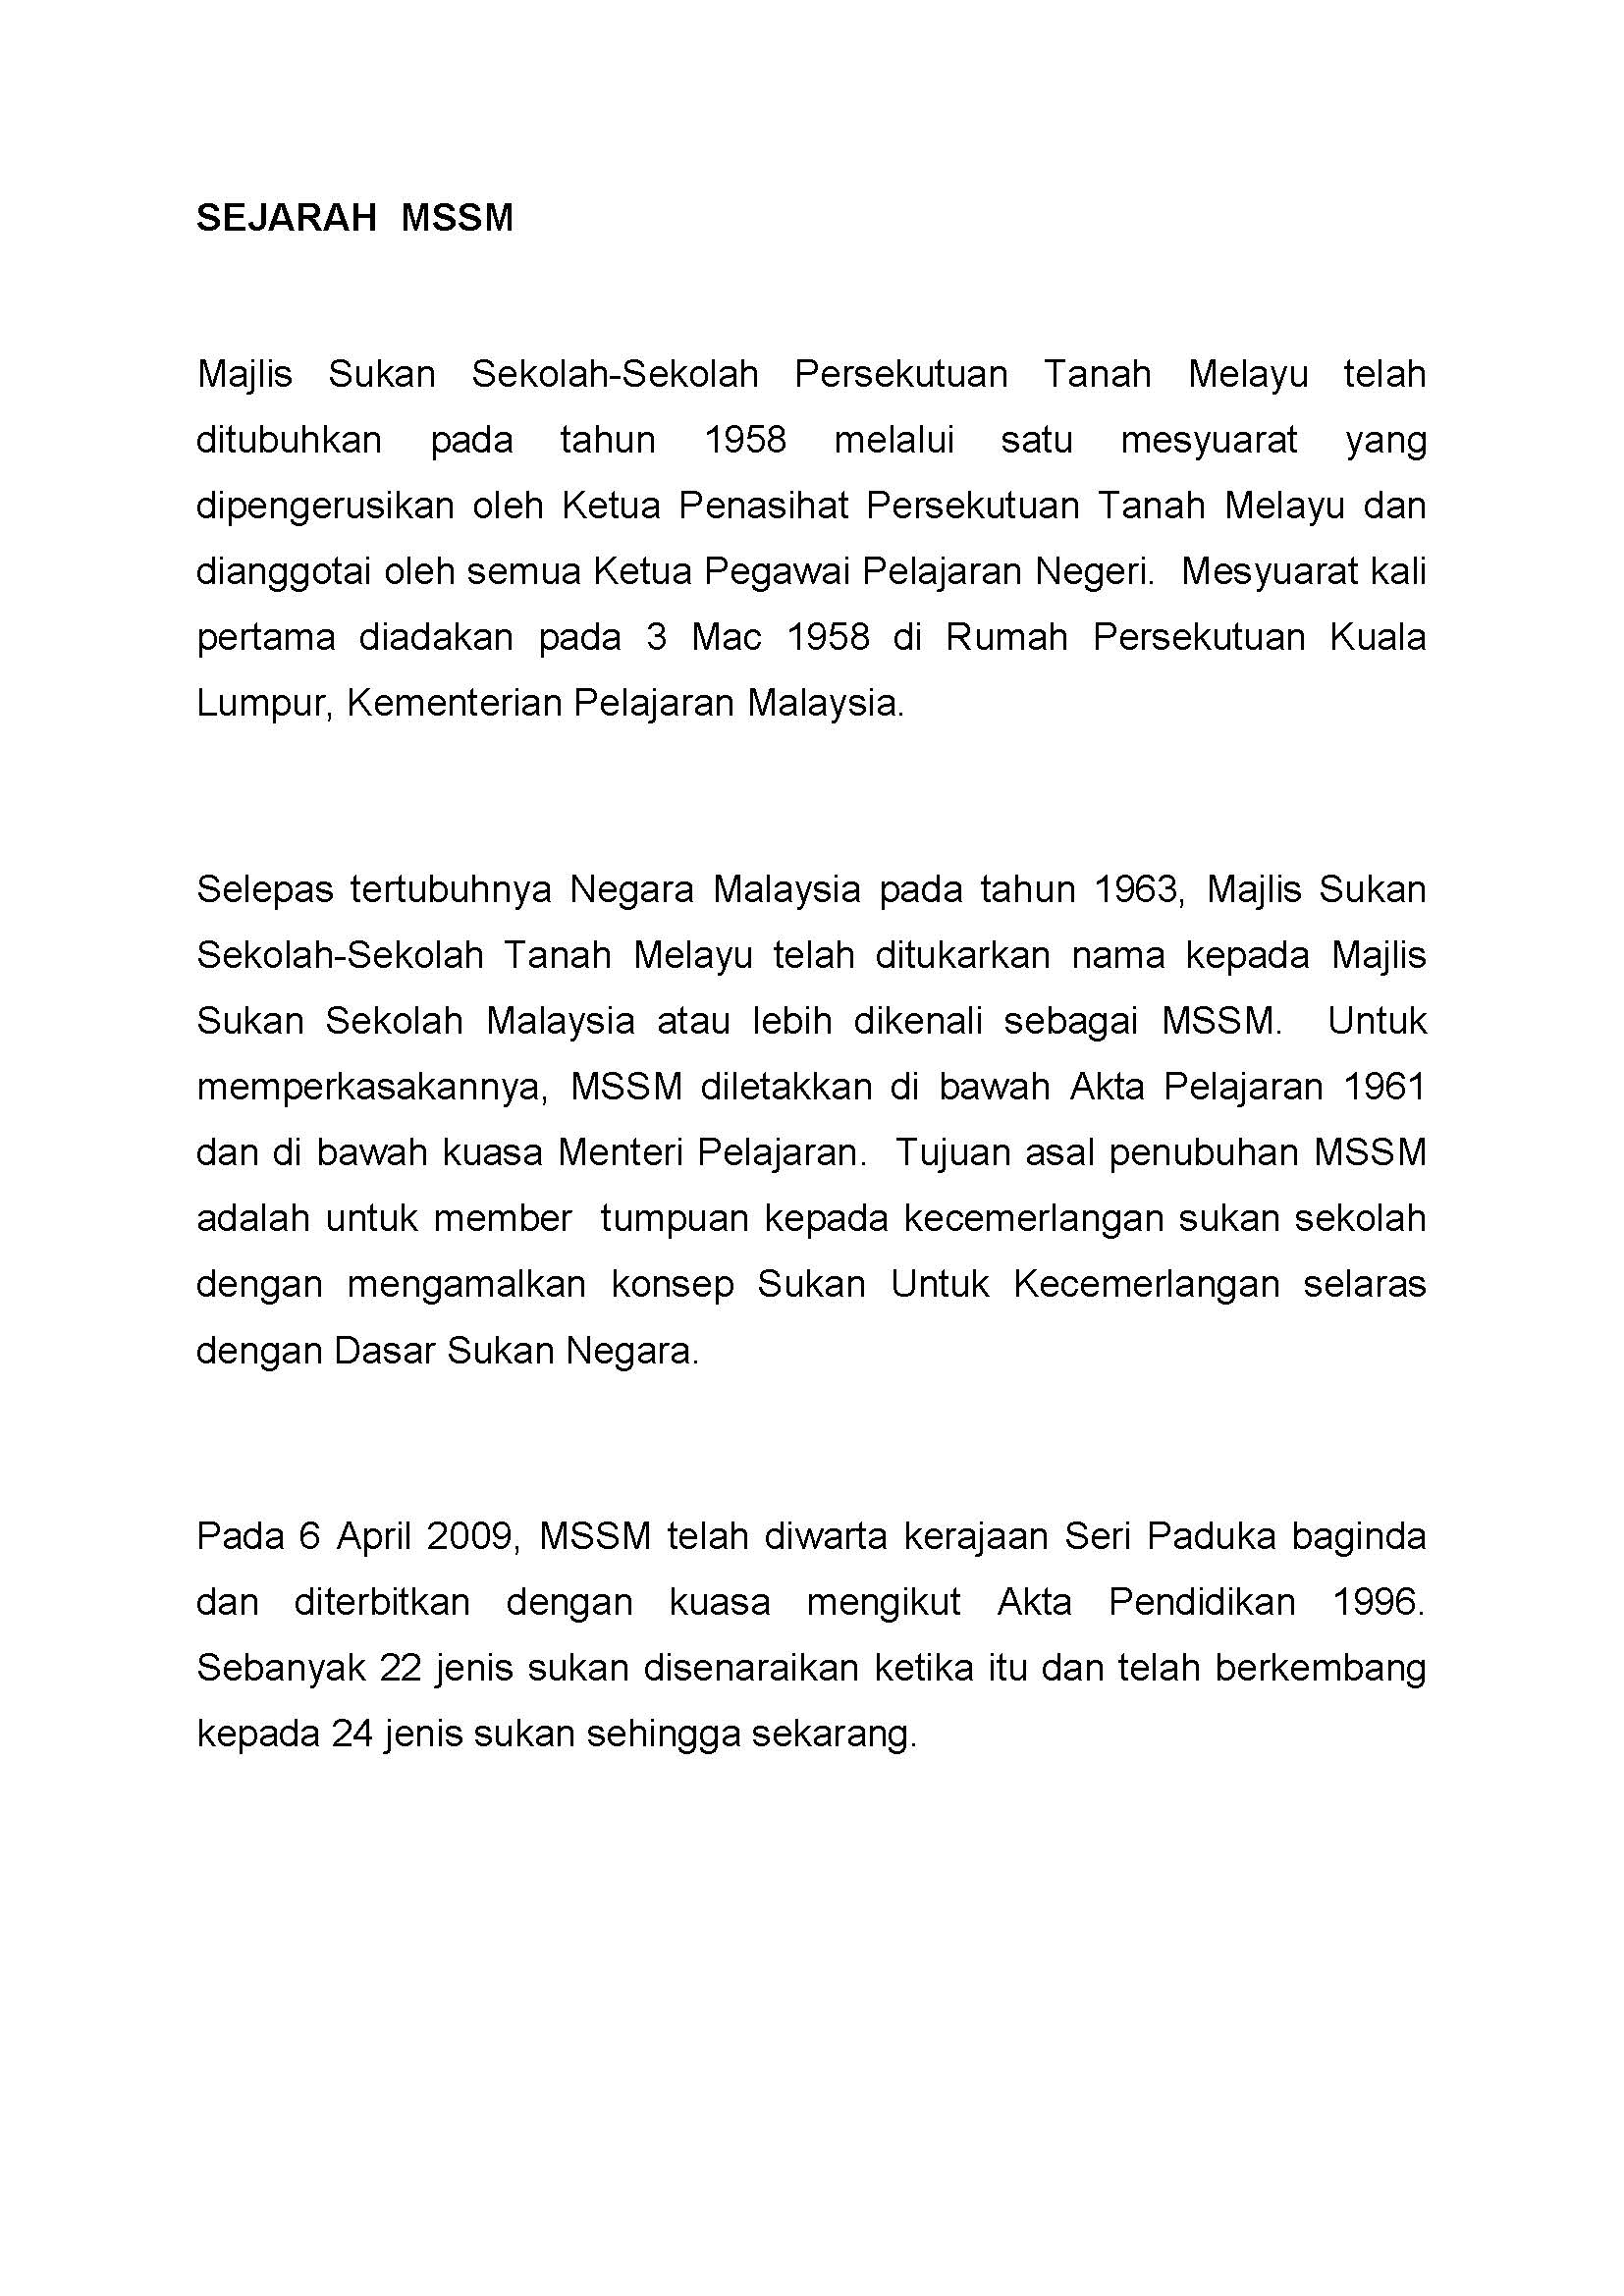 Bilakah tarikh penubuhan negara malaysia